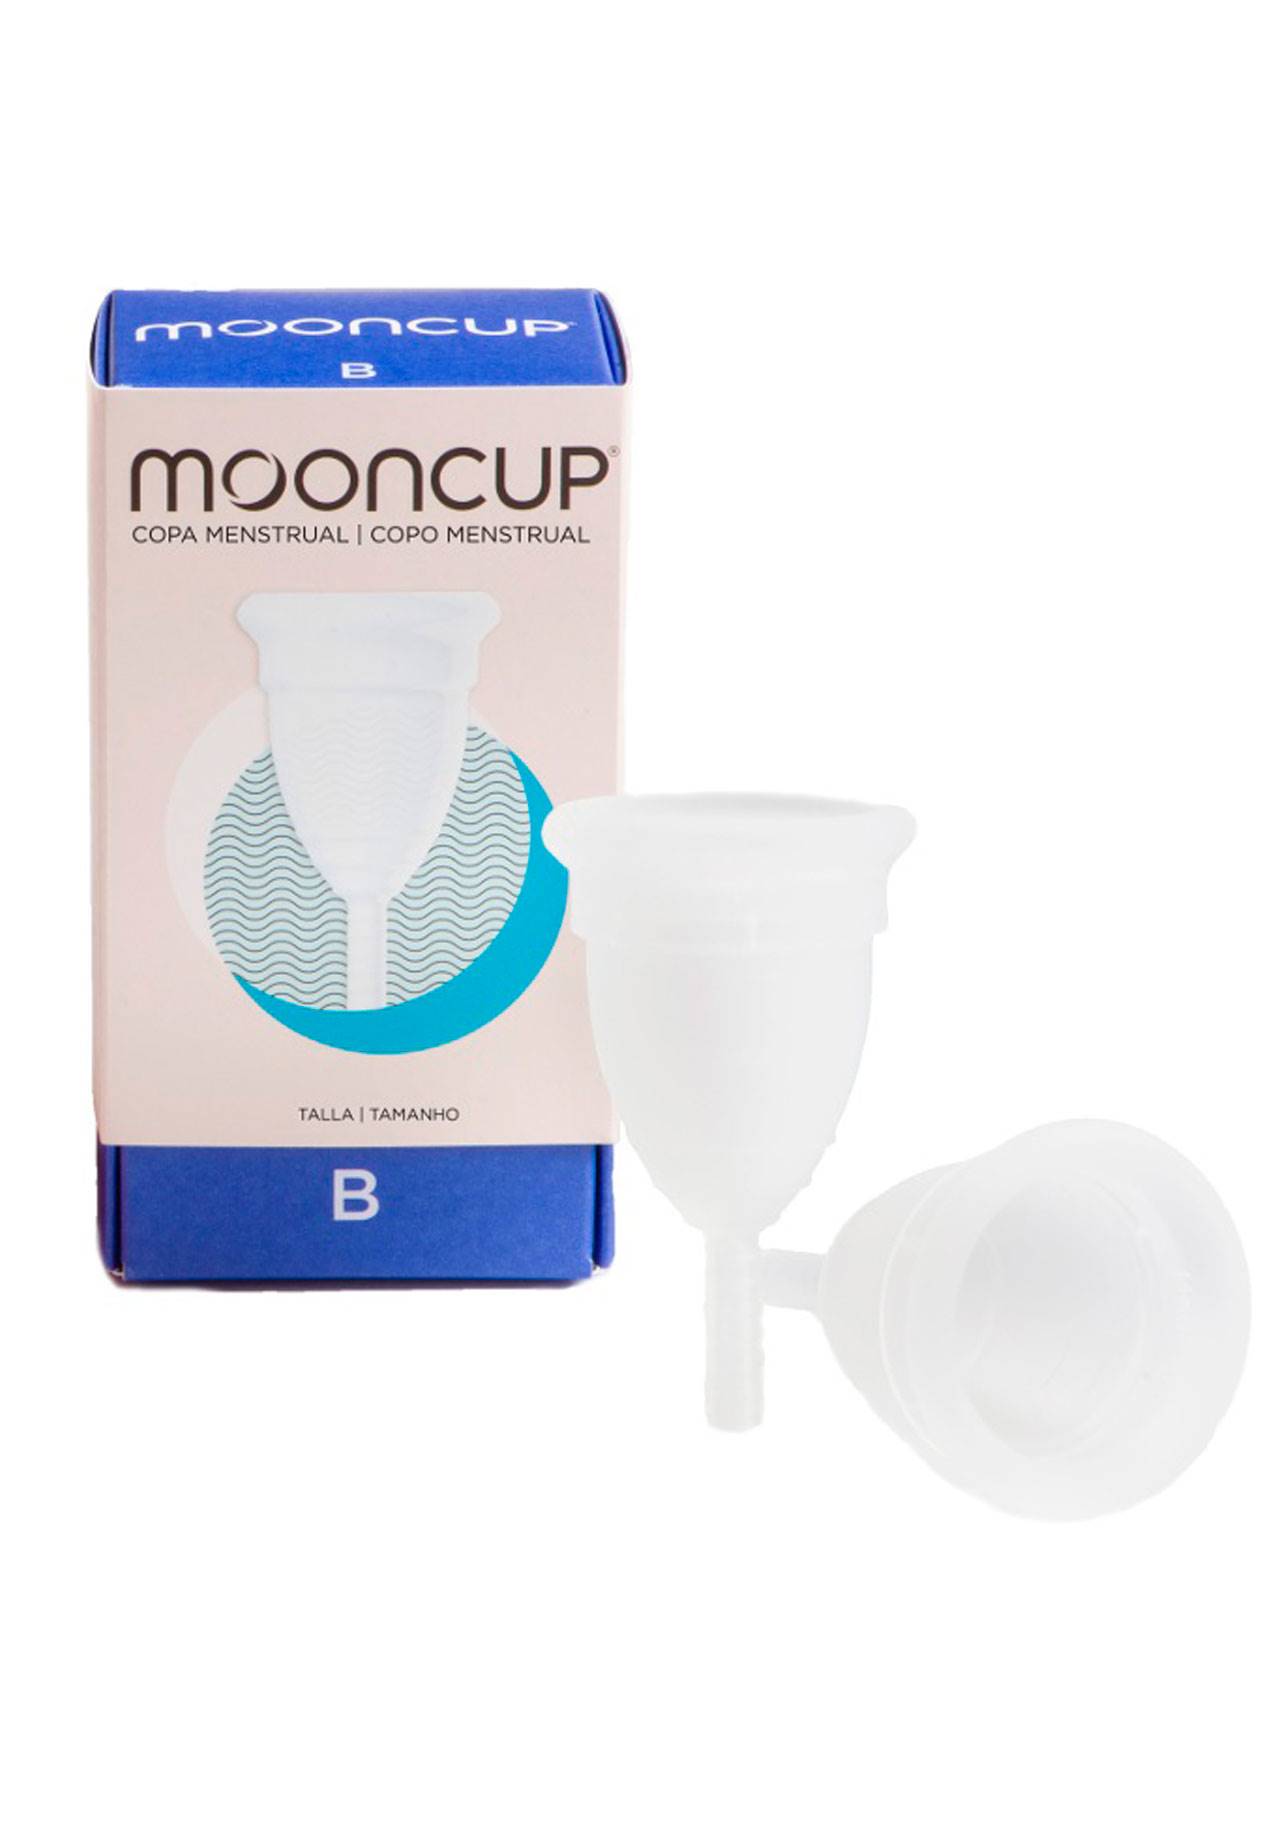 Mooncup, una buena opción si has sido mamá